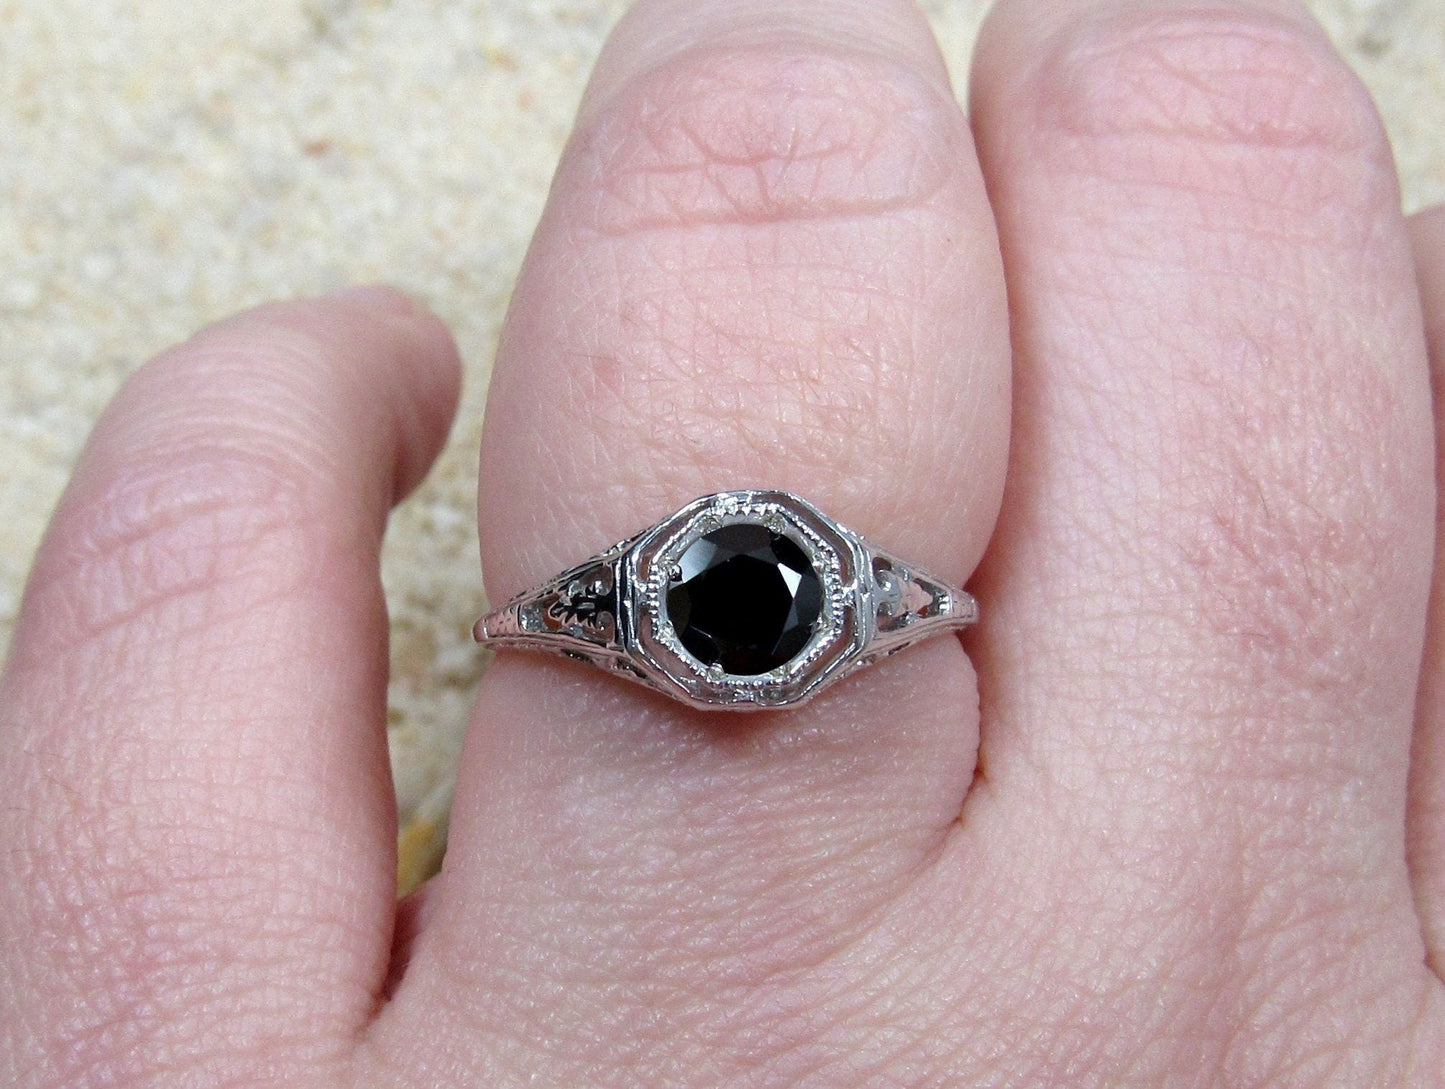 Black Spinel Engagement Ring,Antique Ring,Filigree Ring,Vintage Ring,Kassandra,.75ct Ring,White-Yellow-Rose Gold-10k-14k-18k-Plt BellaMoreDesign.com